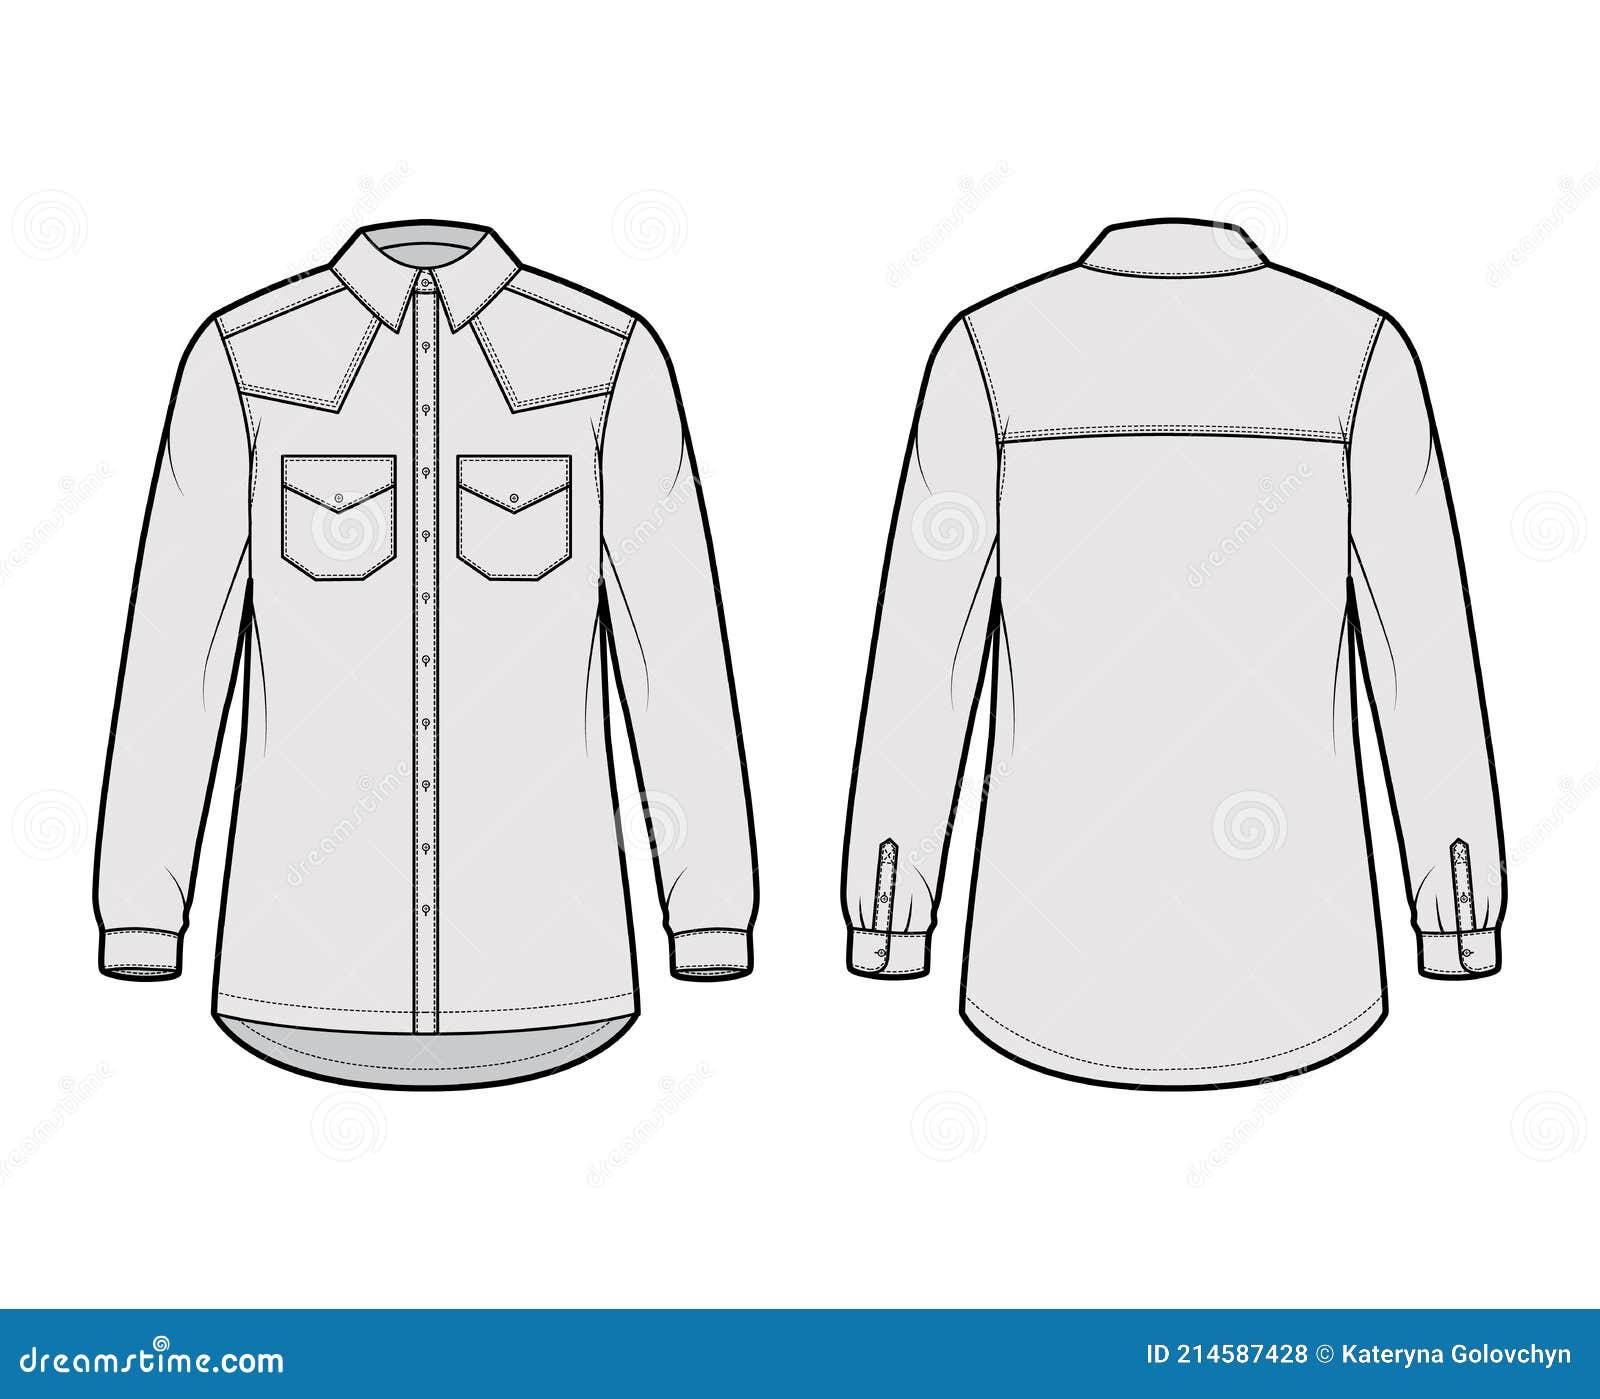 Denim Shirt Jacket Technical Fashion Illustration with Oversized Body ...